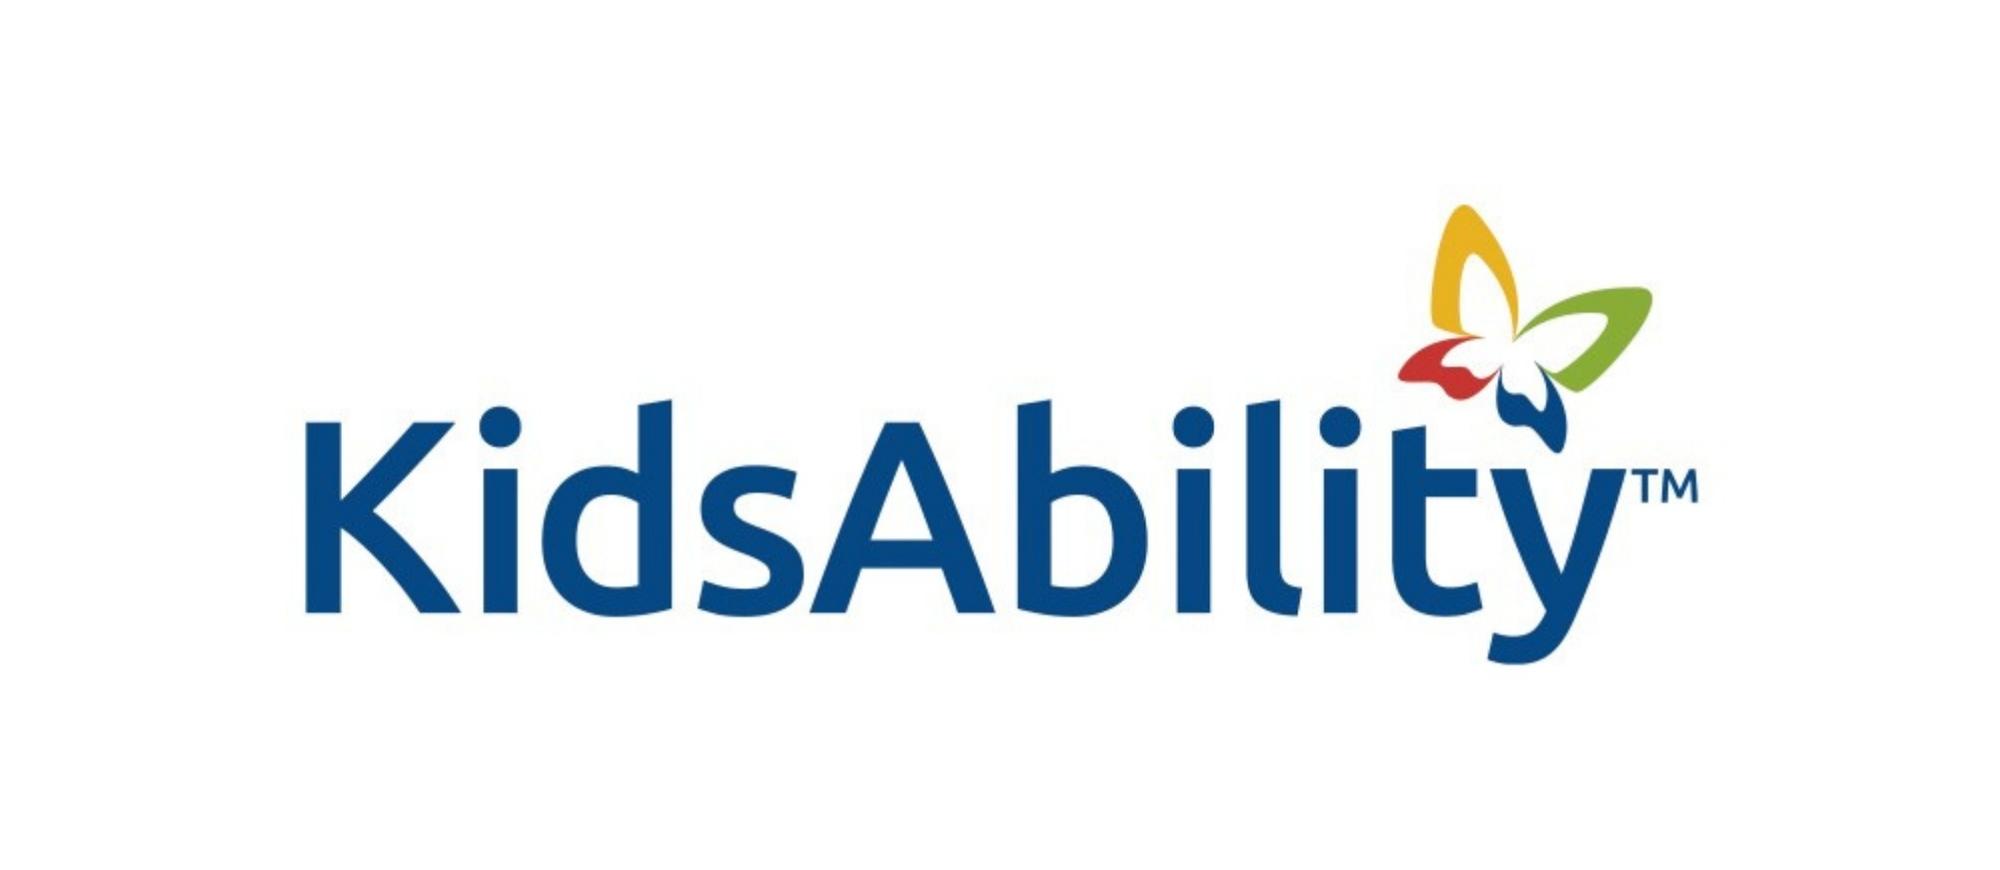 KidsAbility logo